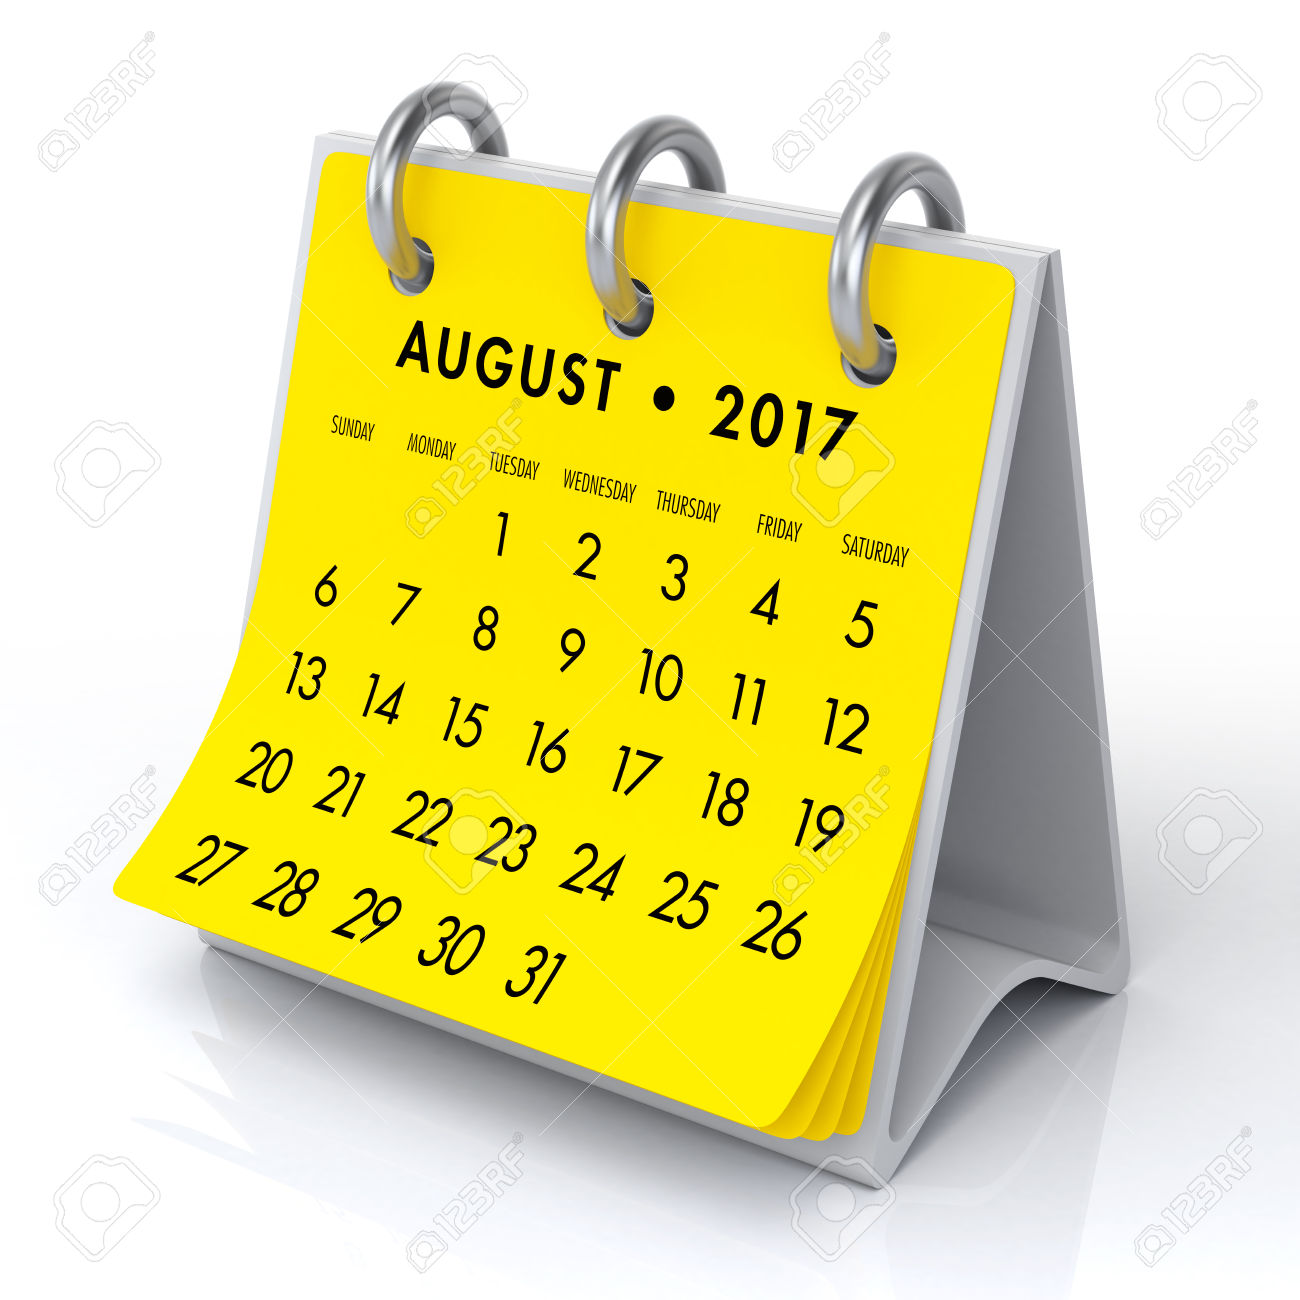 August clipart calendar, August calendar Transparent FREE